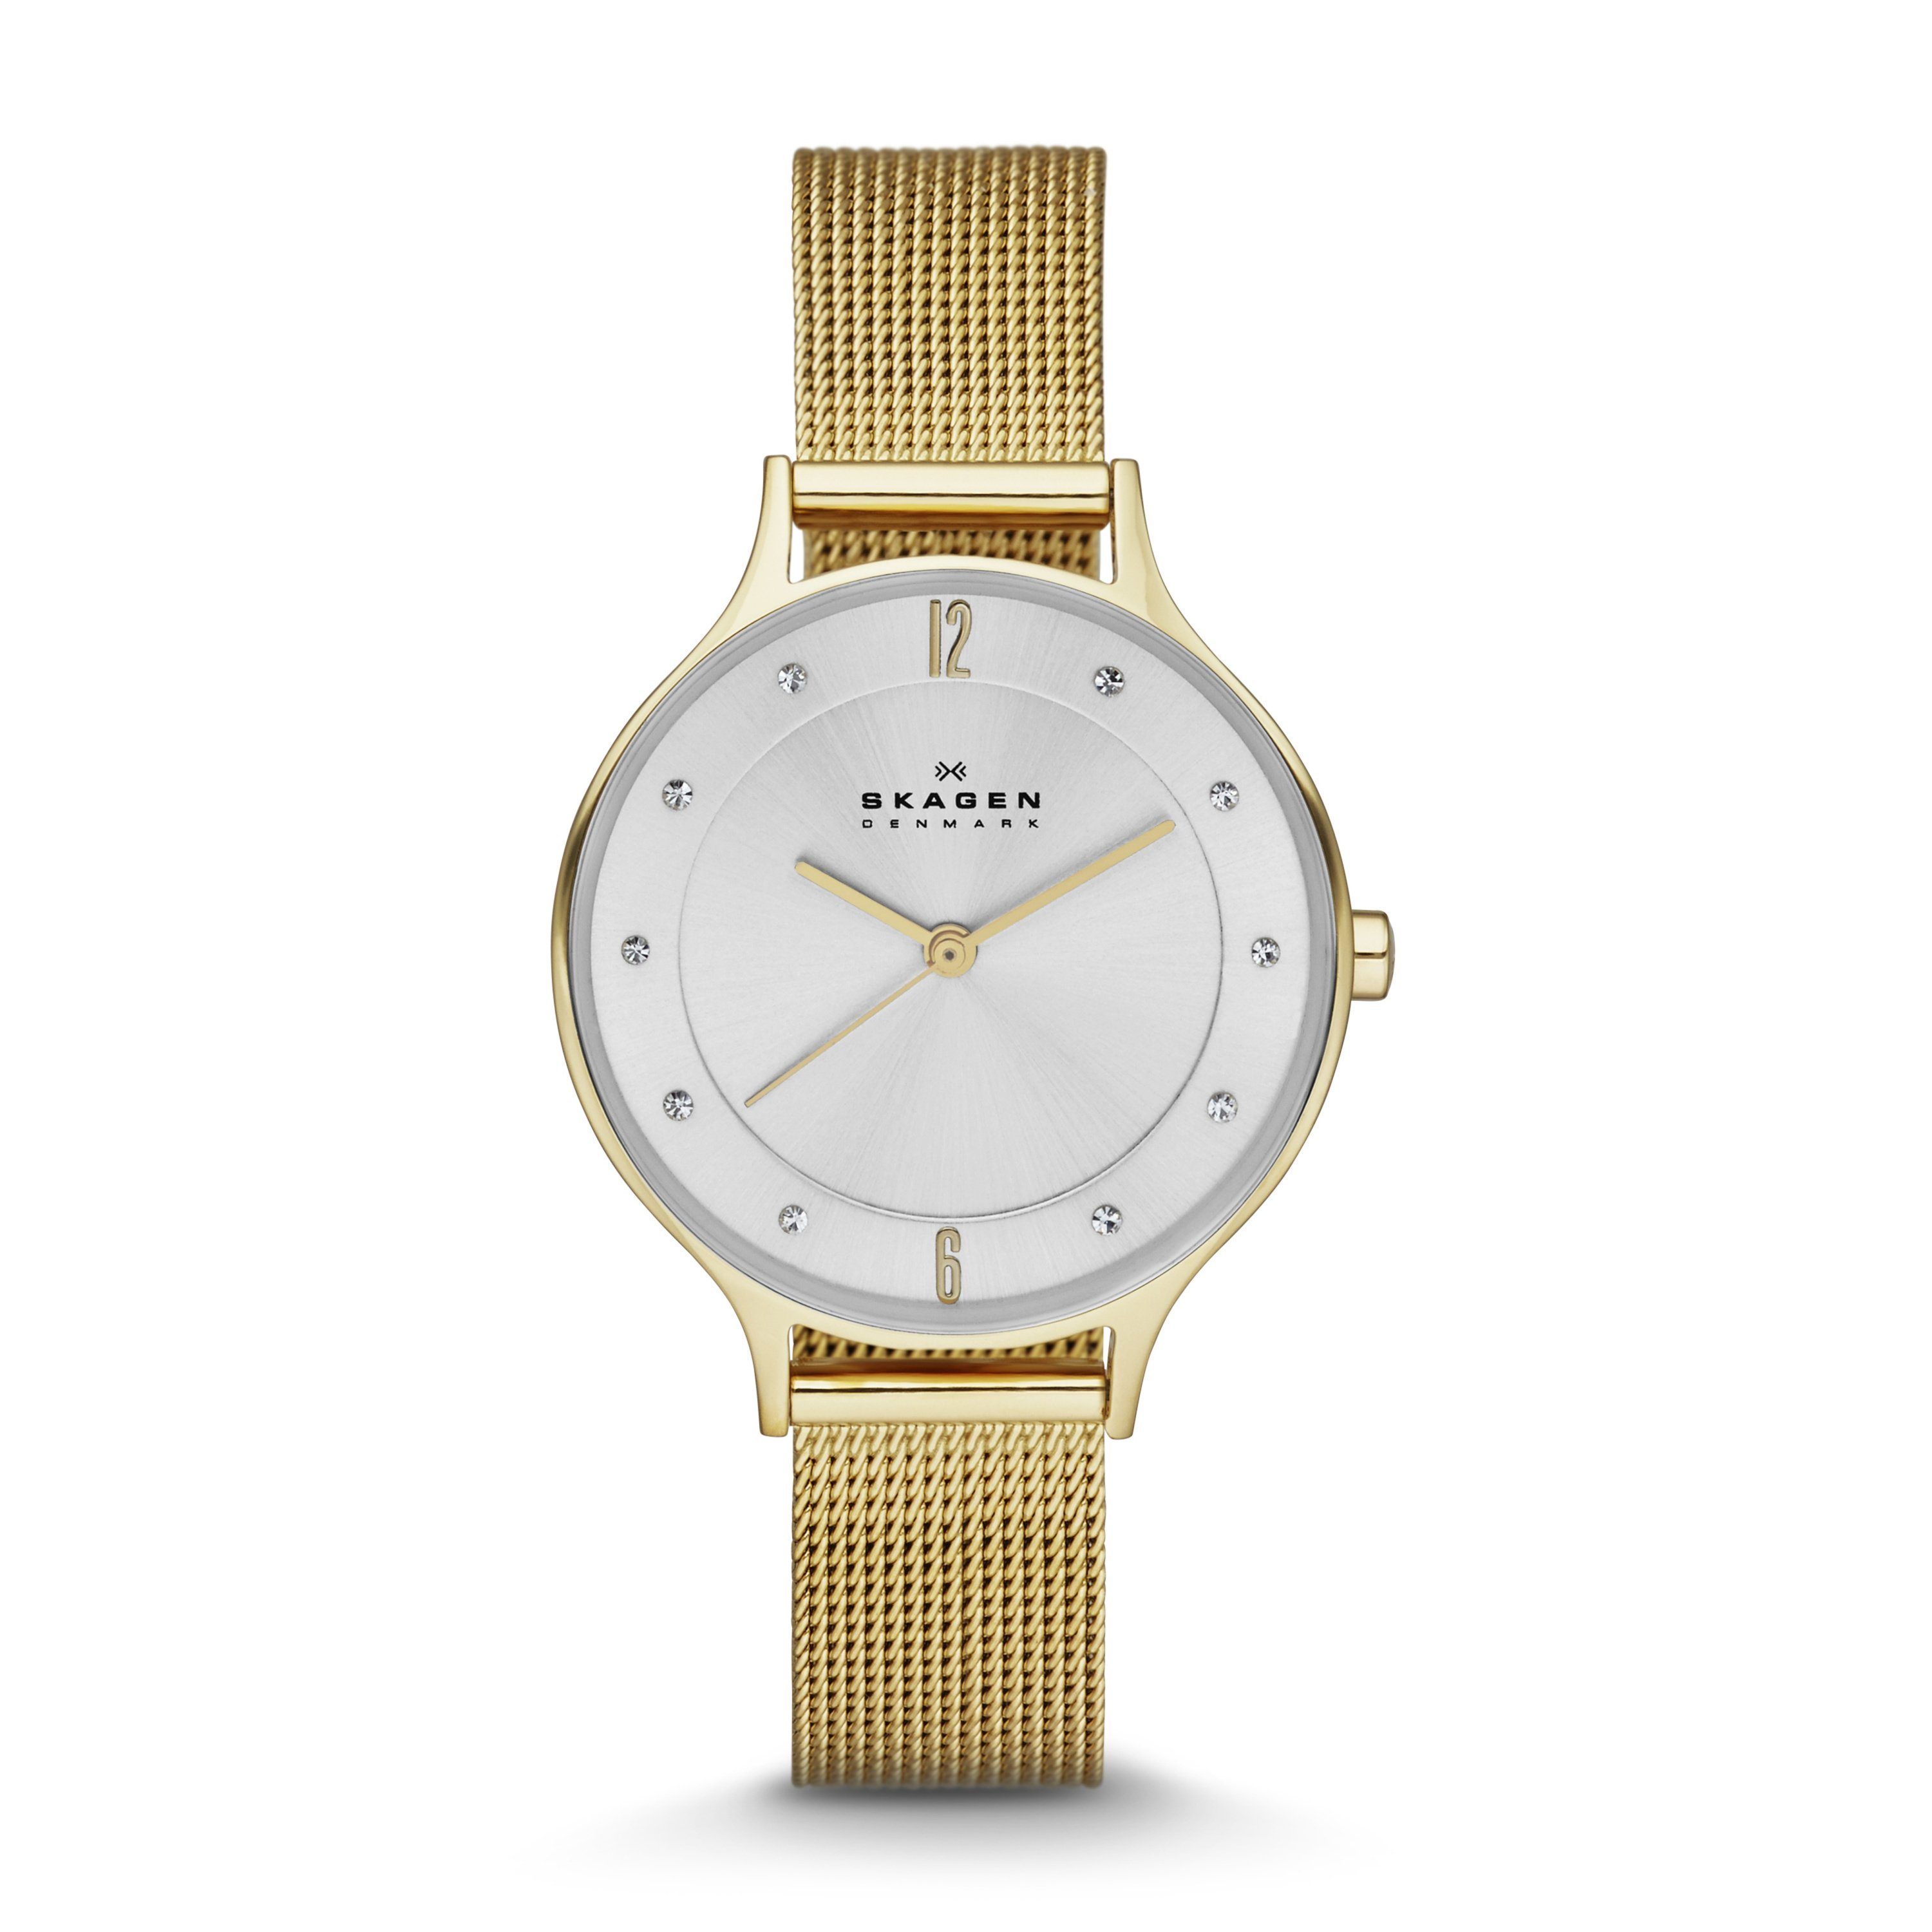 Skagen Quarzuhr »Armbanduhr« online kaufen | OTTO